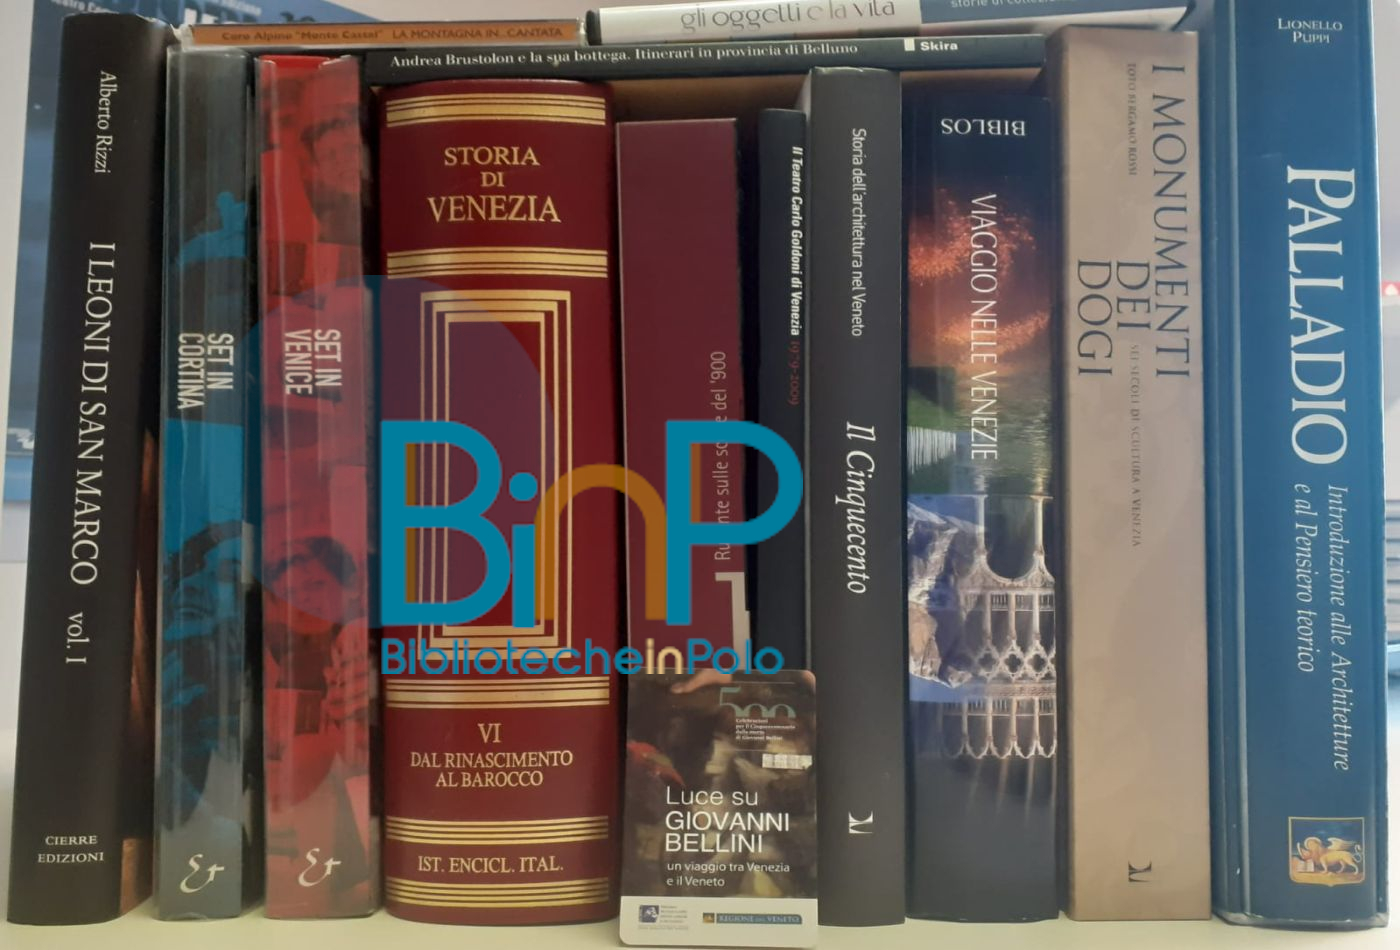 Risorse bibliotecarie immagine segna posto, libri e dvd con logo BINP - Biblioteche in Polo